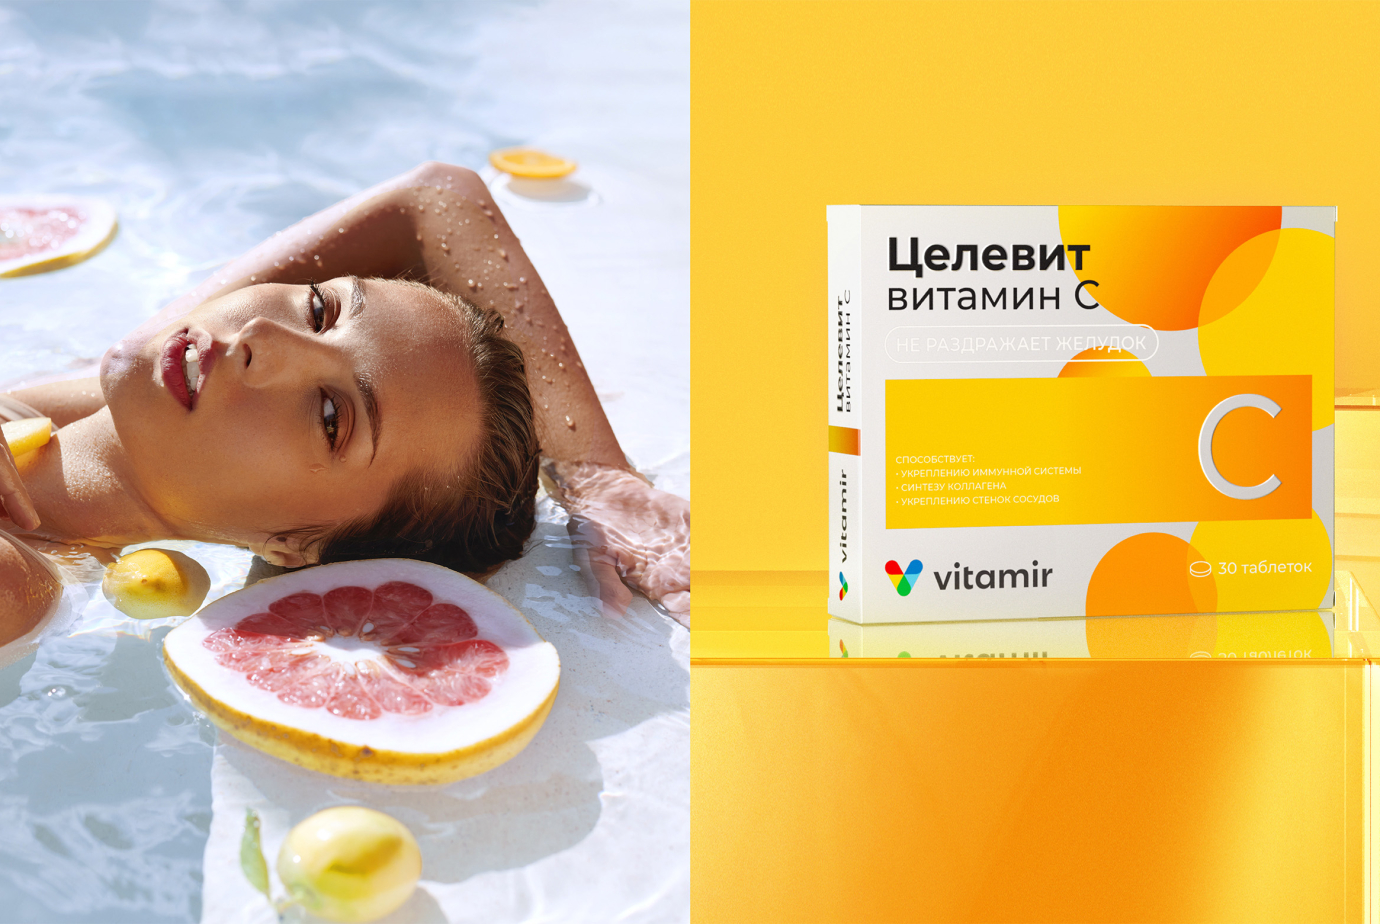 Разработка дизайн упаковки для витаминного комплекса под брендом Vitamir